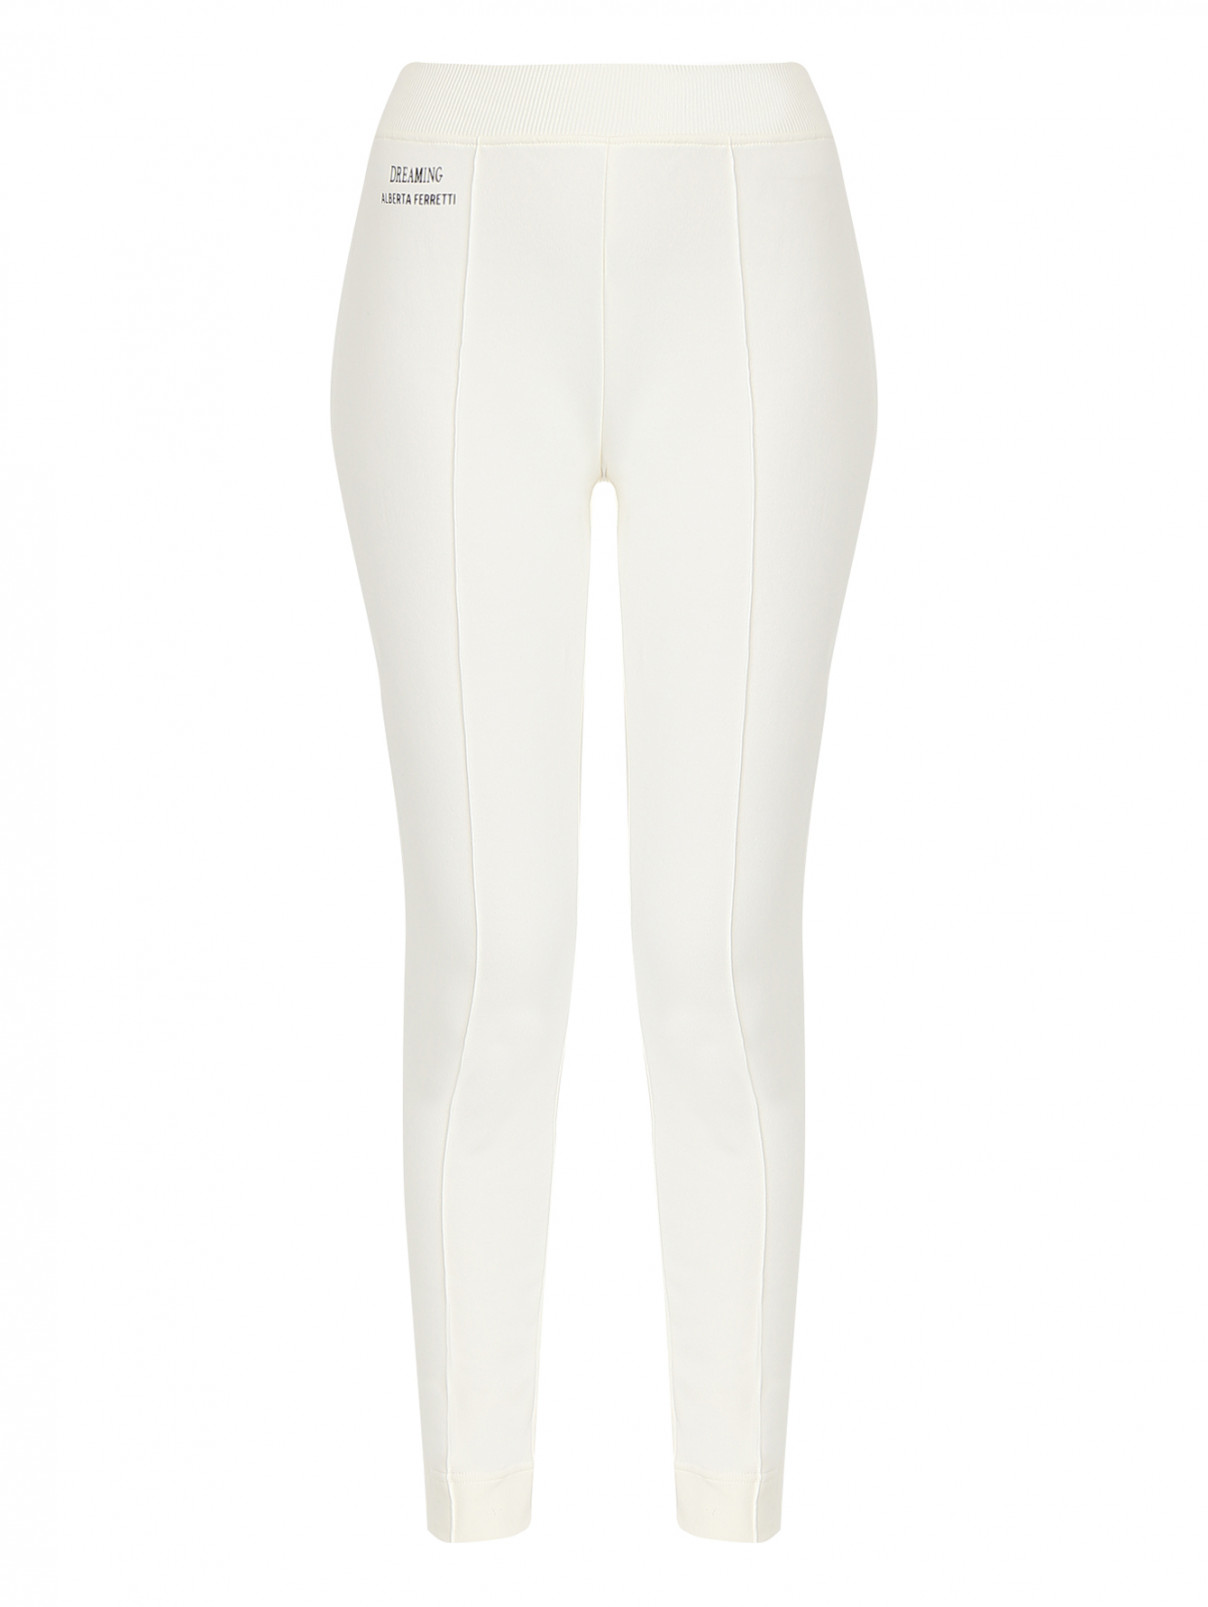 Трикотажные брюки на резинке со стрелками Alberta Ferretti  –  Общий вид  – Цвет:  Белый